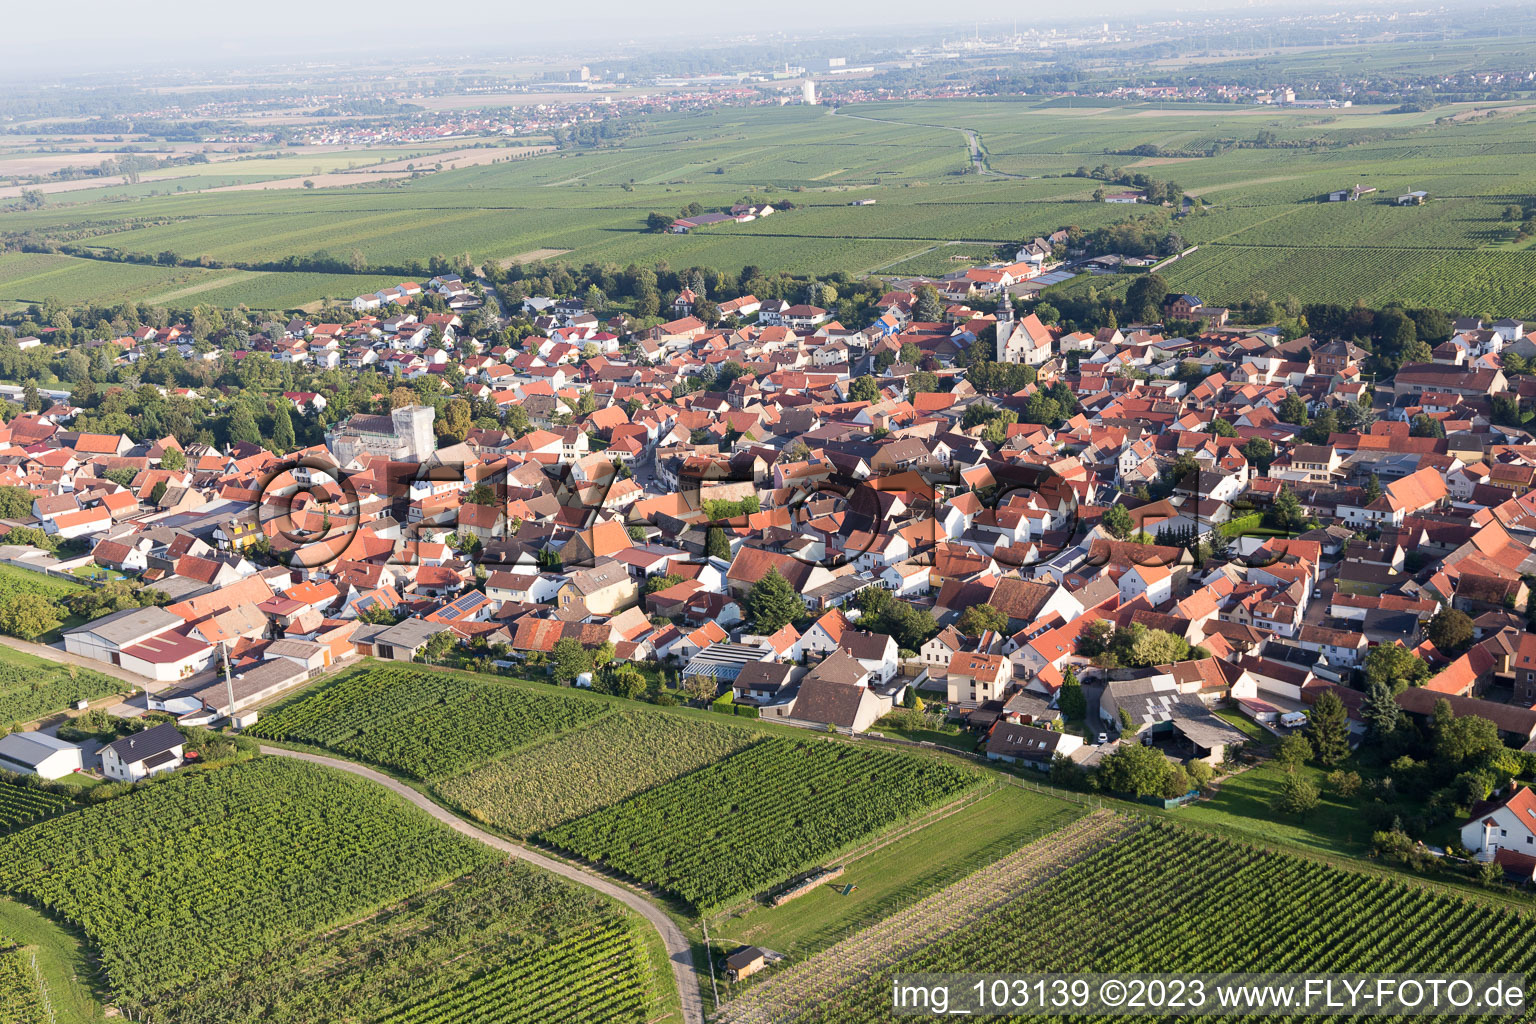 Bechtheim im Bundesland Rheinland-Pfalz, Deutschland aus der Luft betrachtet